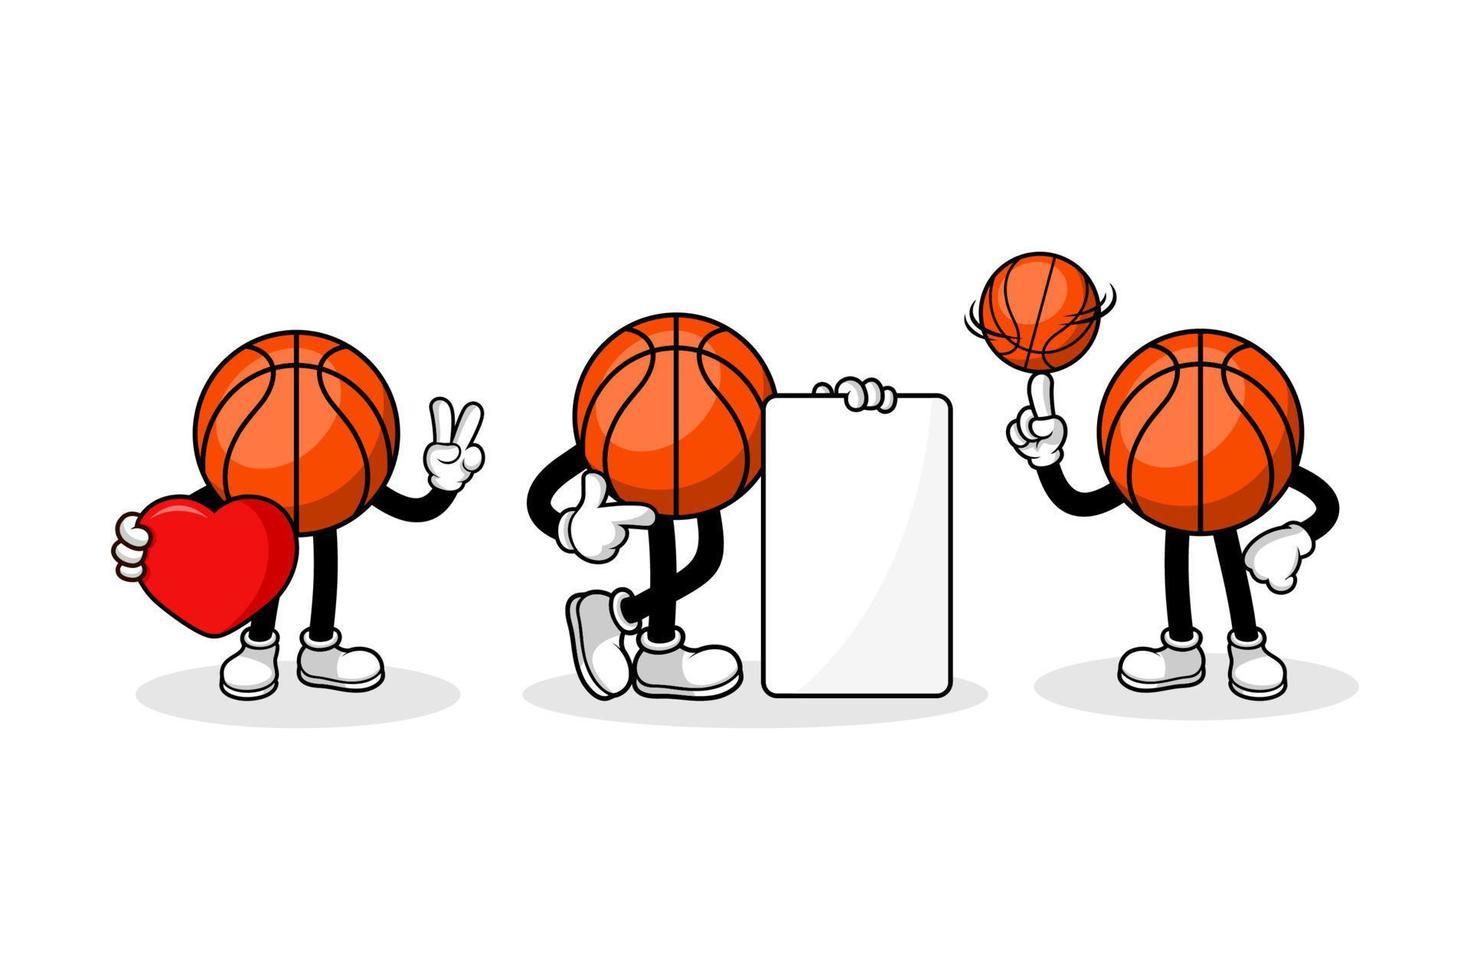 Basketball cartoon character design collection vector